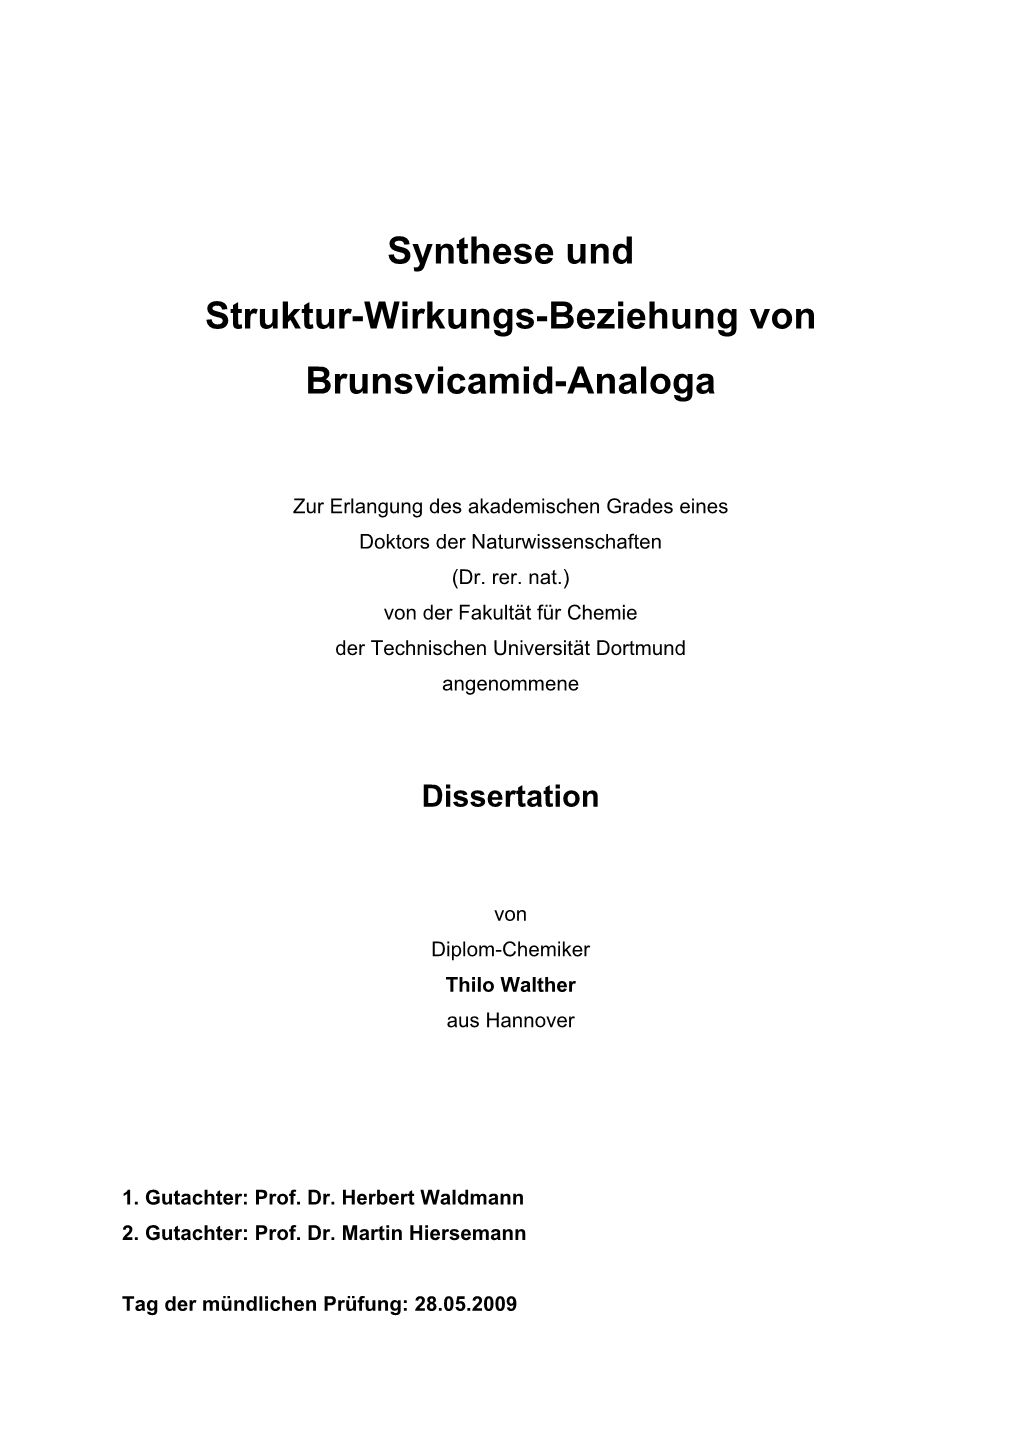 Synthese Und Struktur-Wirkungs-Beziehung Von Brunsvicamid-Analoga